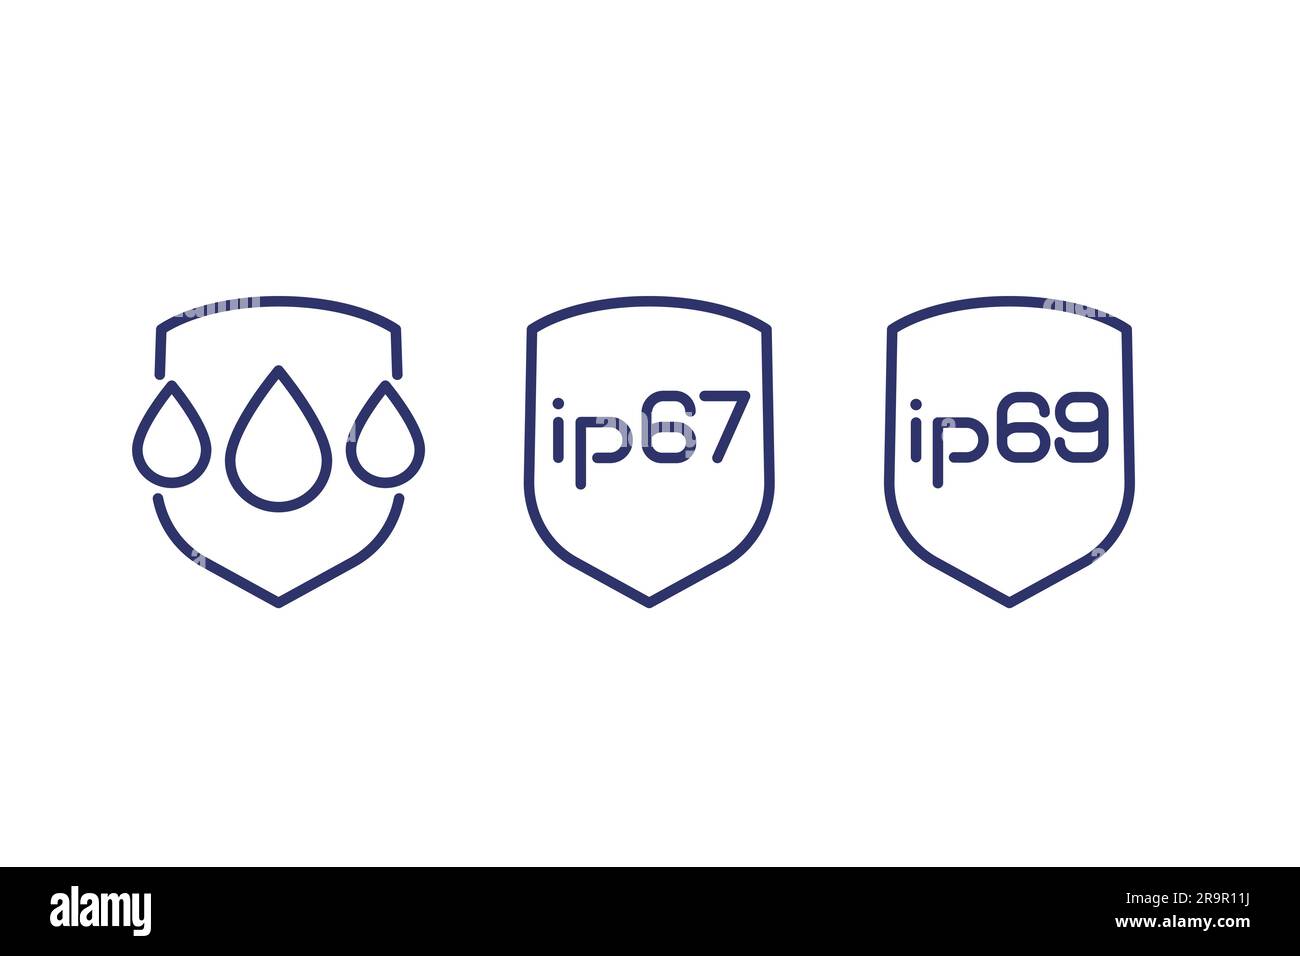 ip67, ip69, icônes d'étanchéité et de résistance à l'eau Illustration de Vecteur